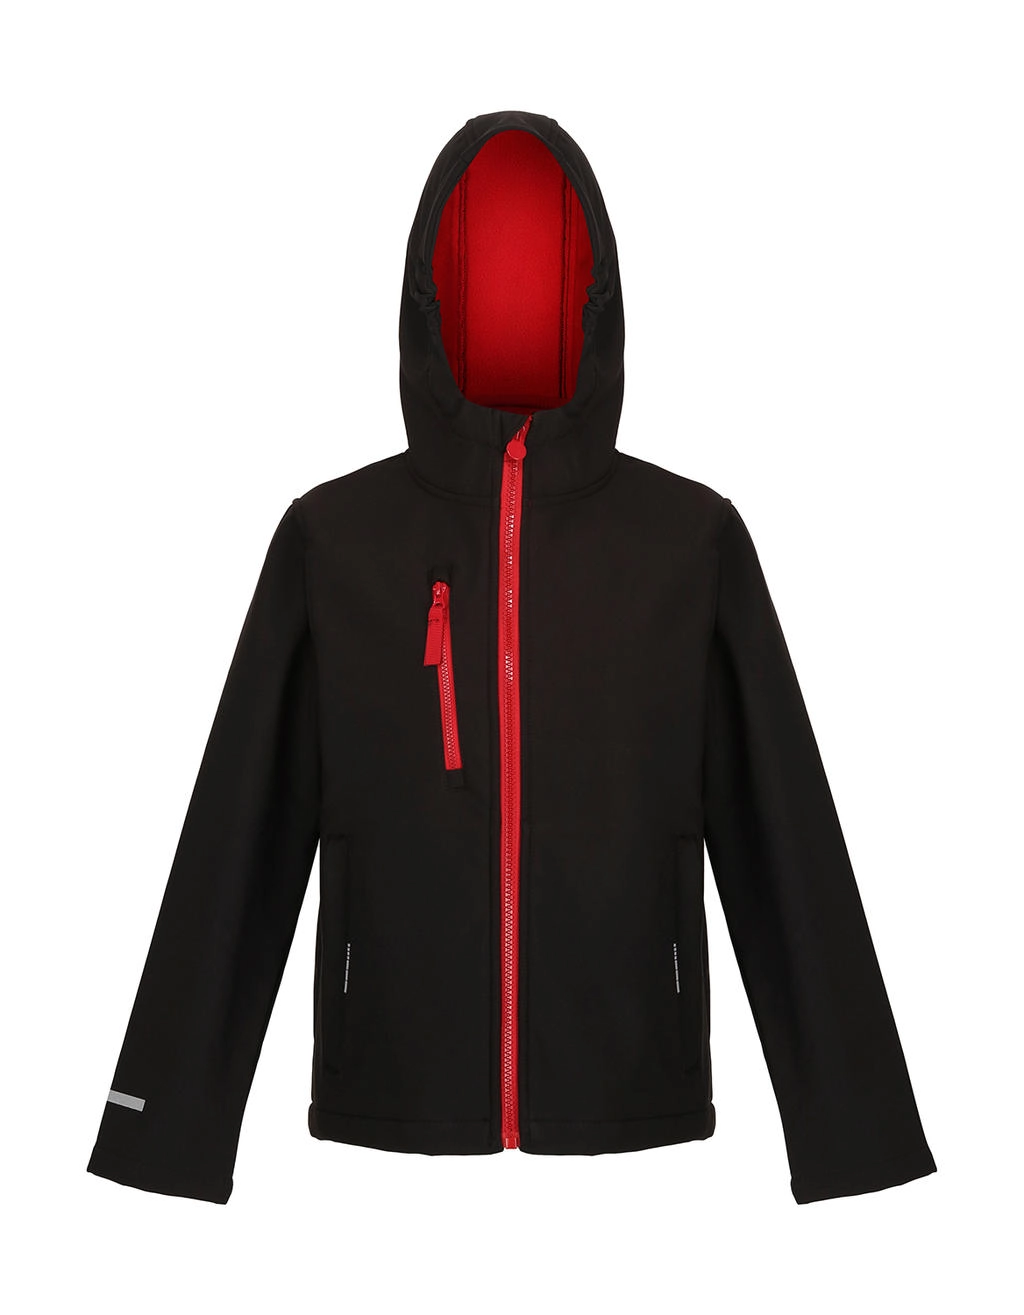 Junior Ablaze 3-Layer Hooded Softshell zum Besticken und Bedrucken in der Farbe Black/Classic Red mit Ihren Logo, Schriftzug oder Motiv.